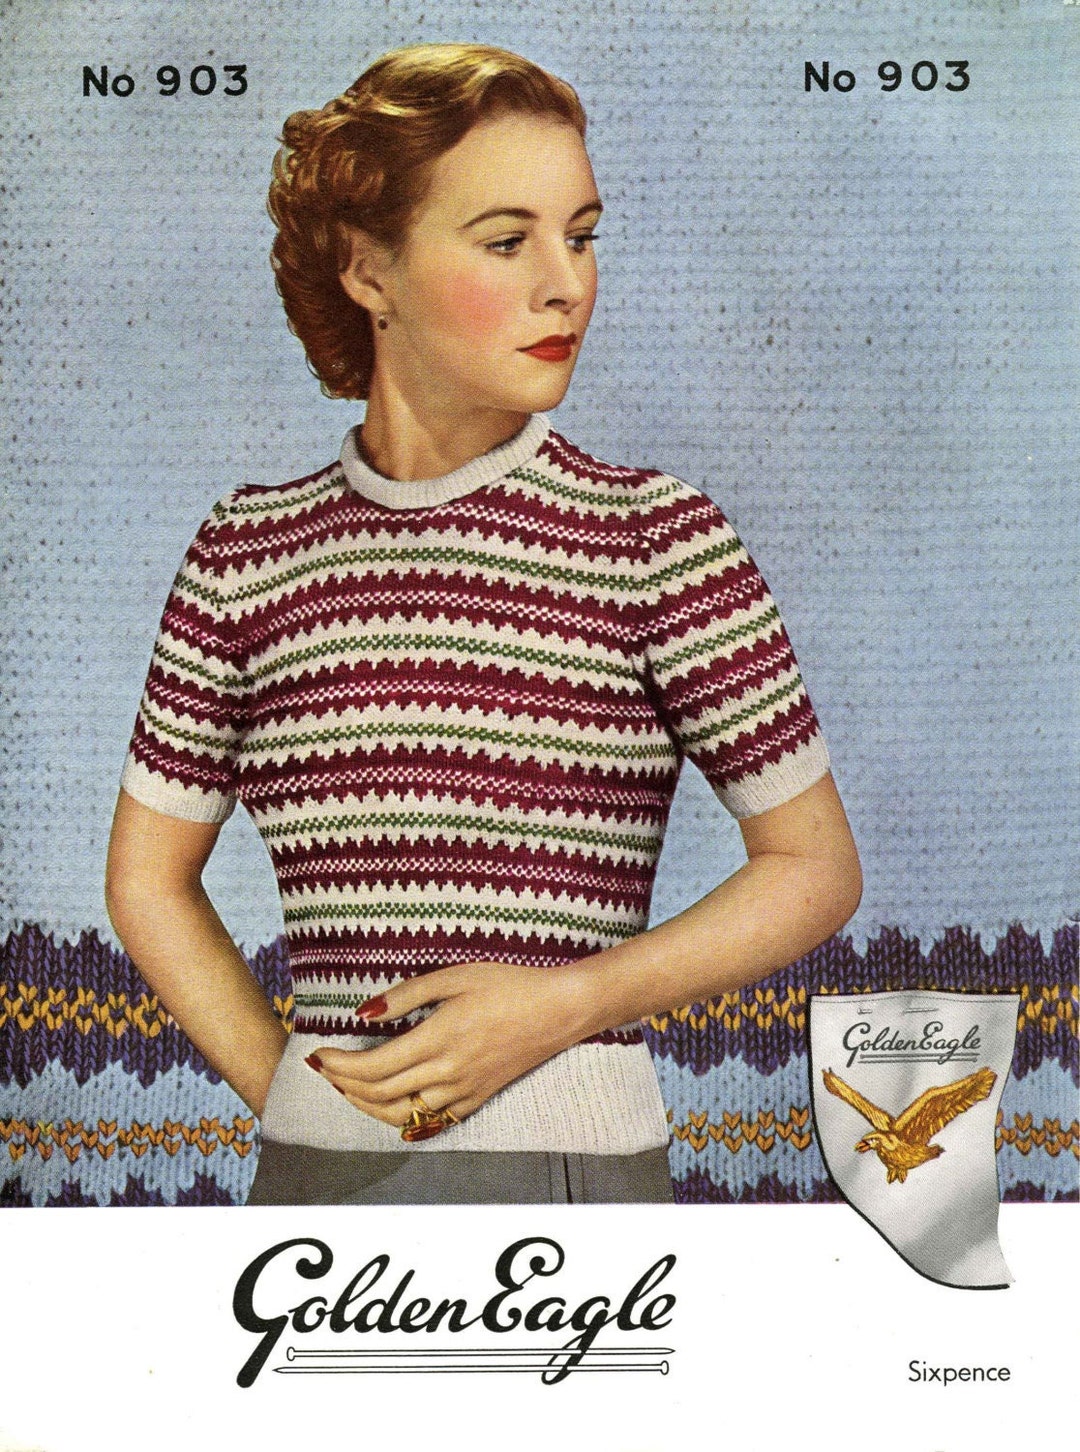 Ladies Fair Isle Jumper 32 Bust Vintage 50s Knitting - Etsy UK